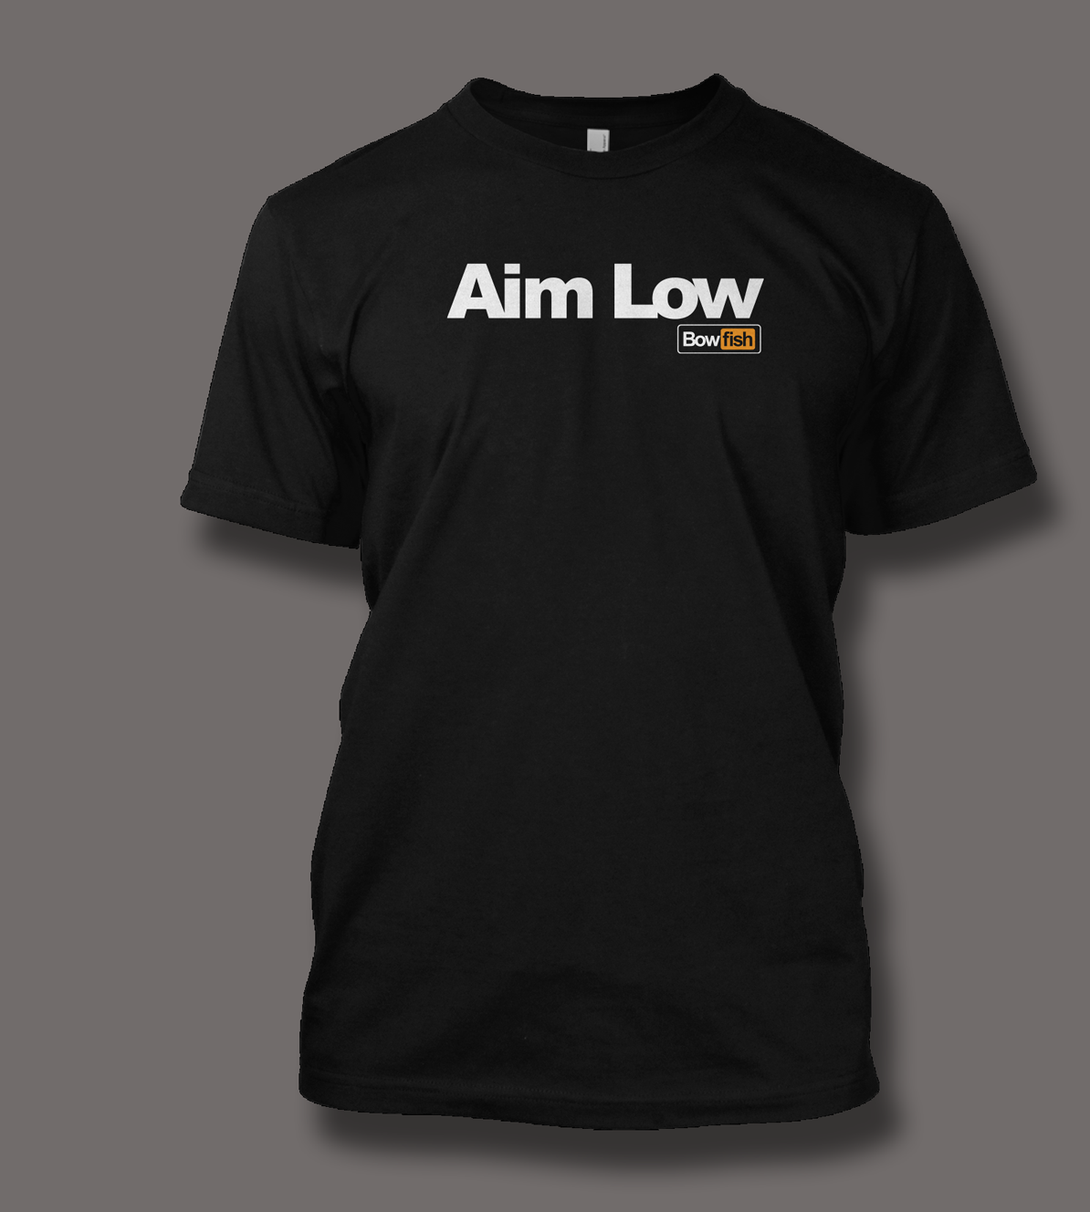 Aim Low - ShirtGuys.com